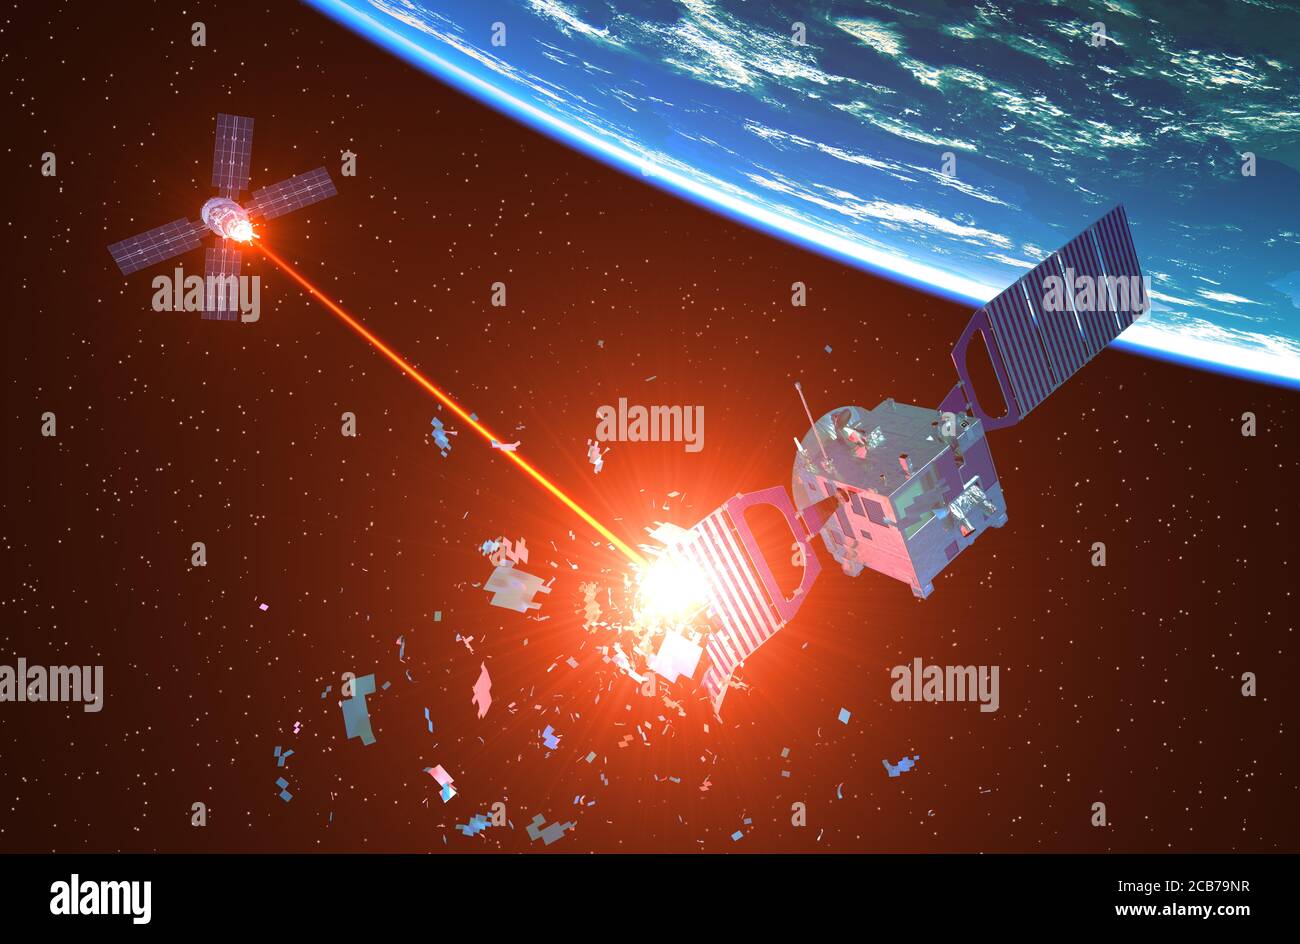 La nave espacial militar dispara un satélite enemigo con un rayo láser. Ilustración 3D. Foto de stock